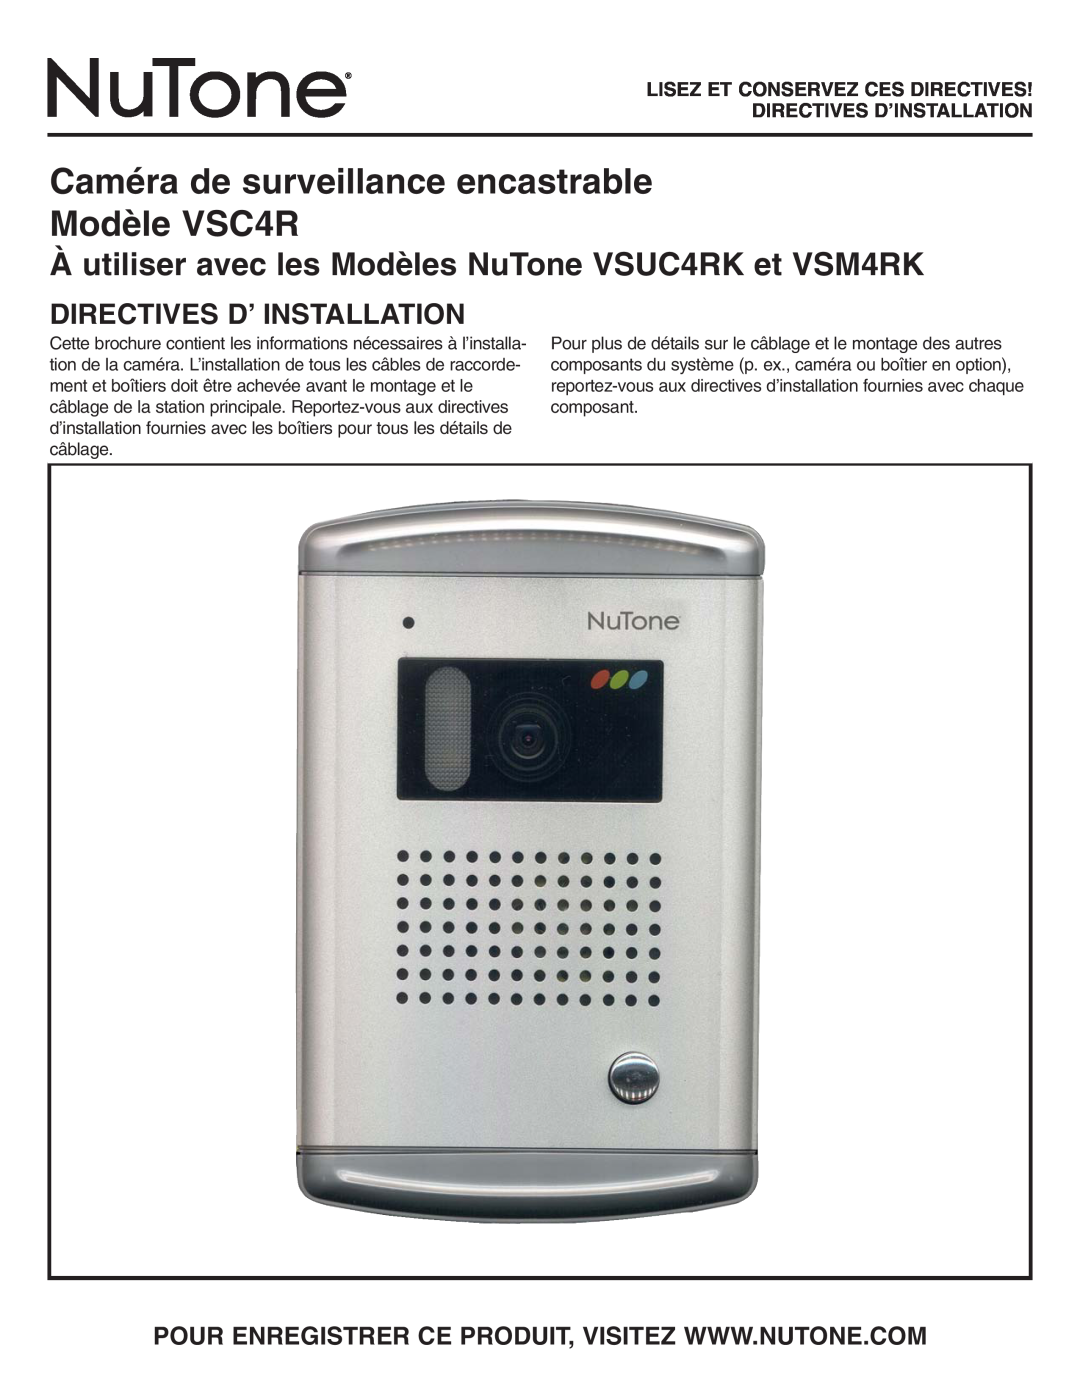 NuTone Caméra de surveillance encastrable Modèle VSC4R, Directives D’ Installation, Lisez Et Conservez Ces Directives 